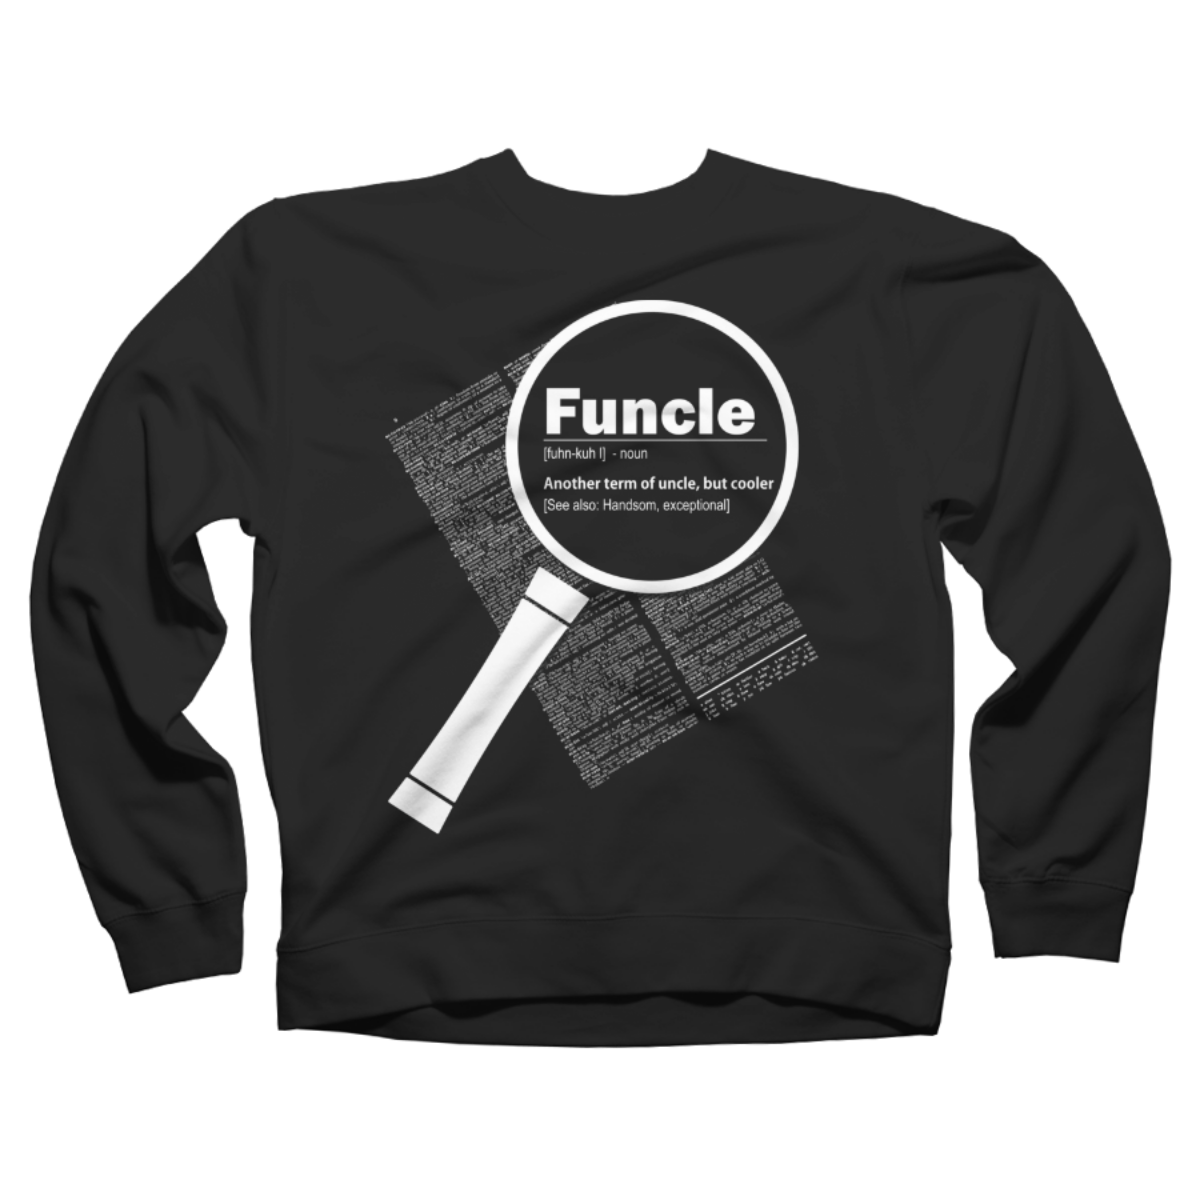 funcle shirts